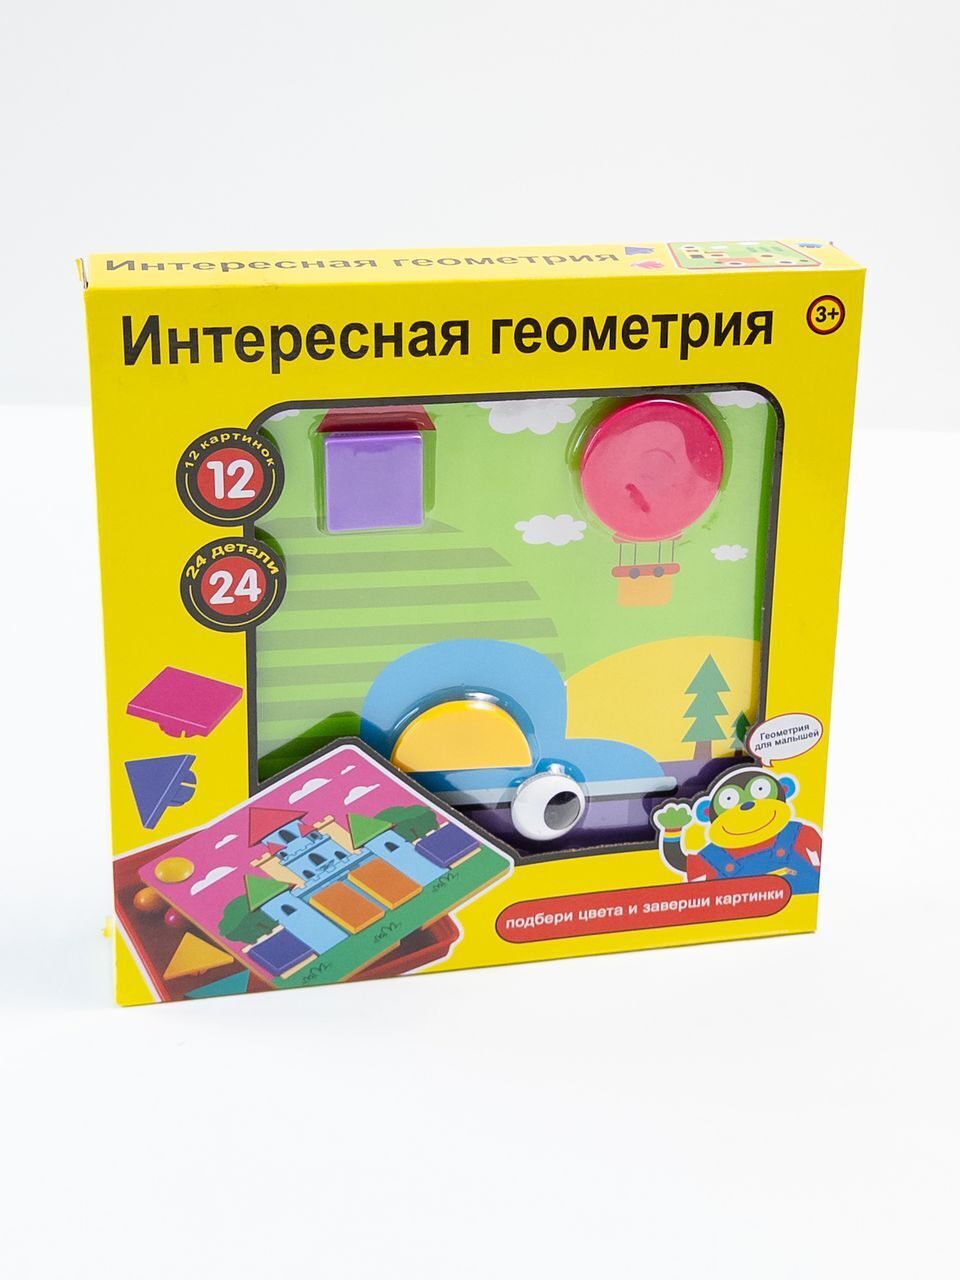 Настольная игра "Интересная геометрия" в коробке (Для детей от 3 лет) *дефект разломана пластина  для фигурок, не влияет на игру